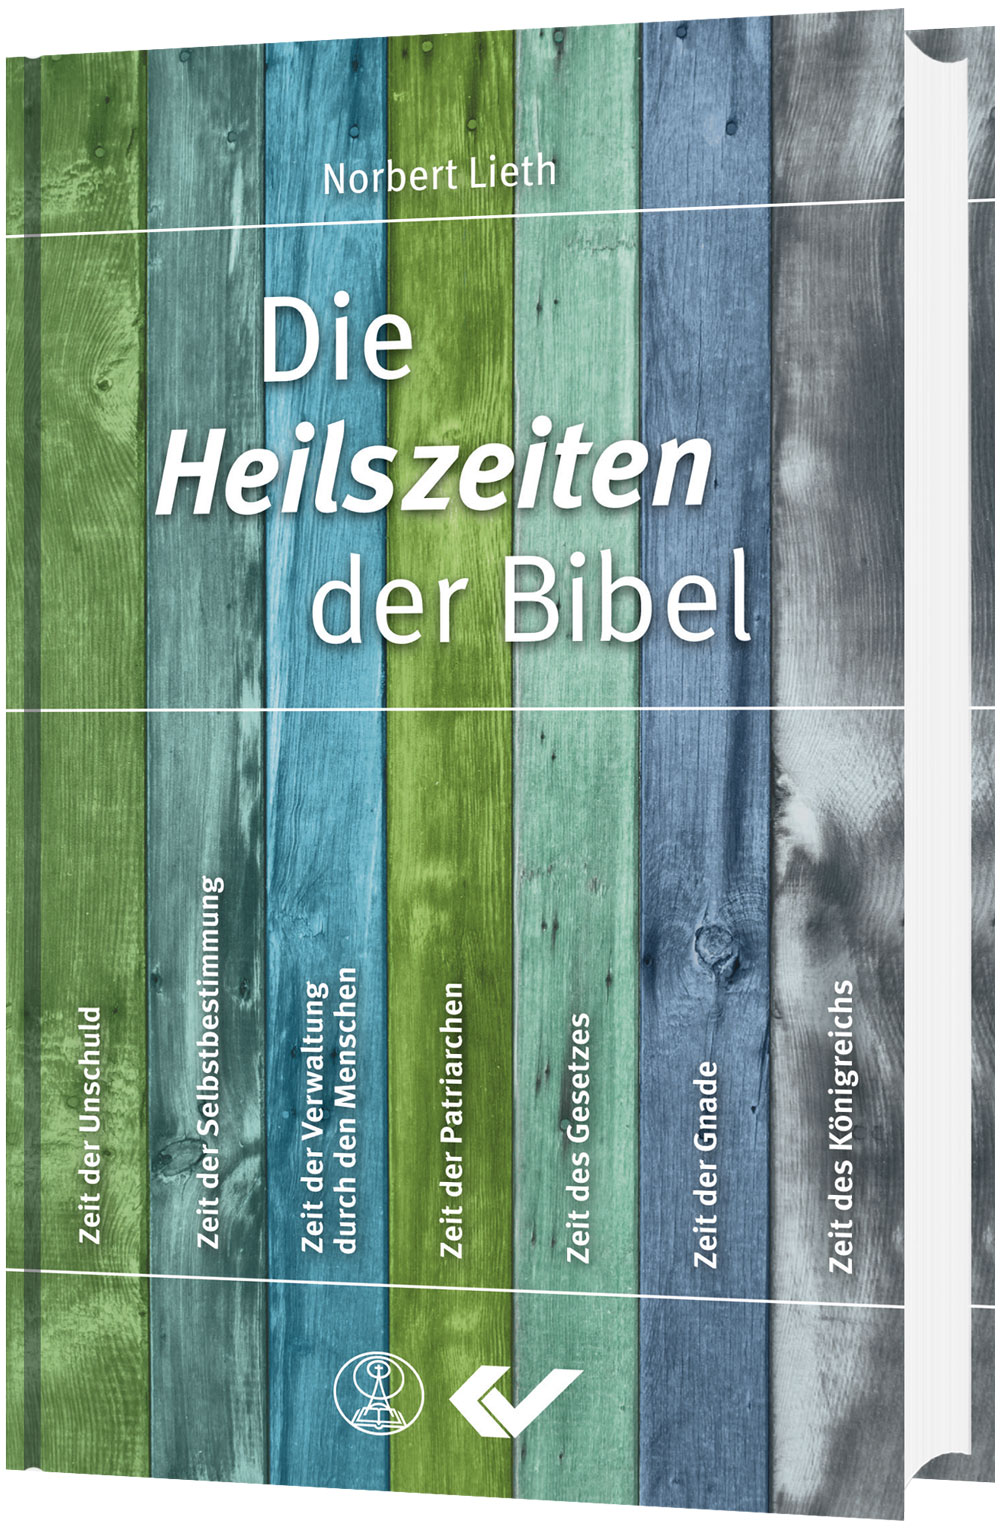 Norbert Lieth: Die Heilszeiten der Bibel